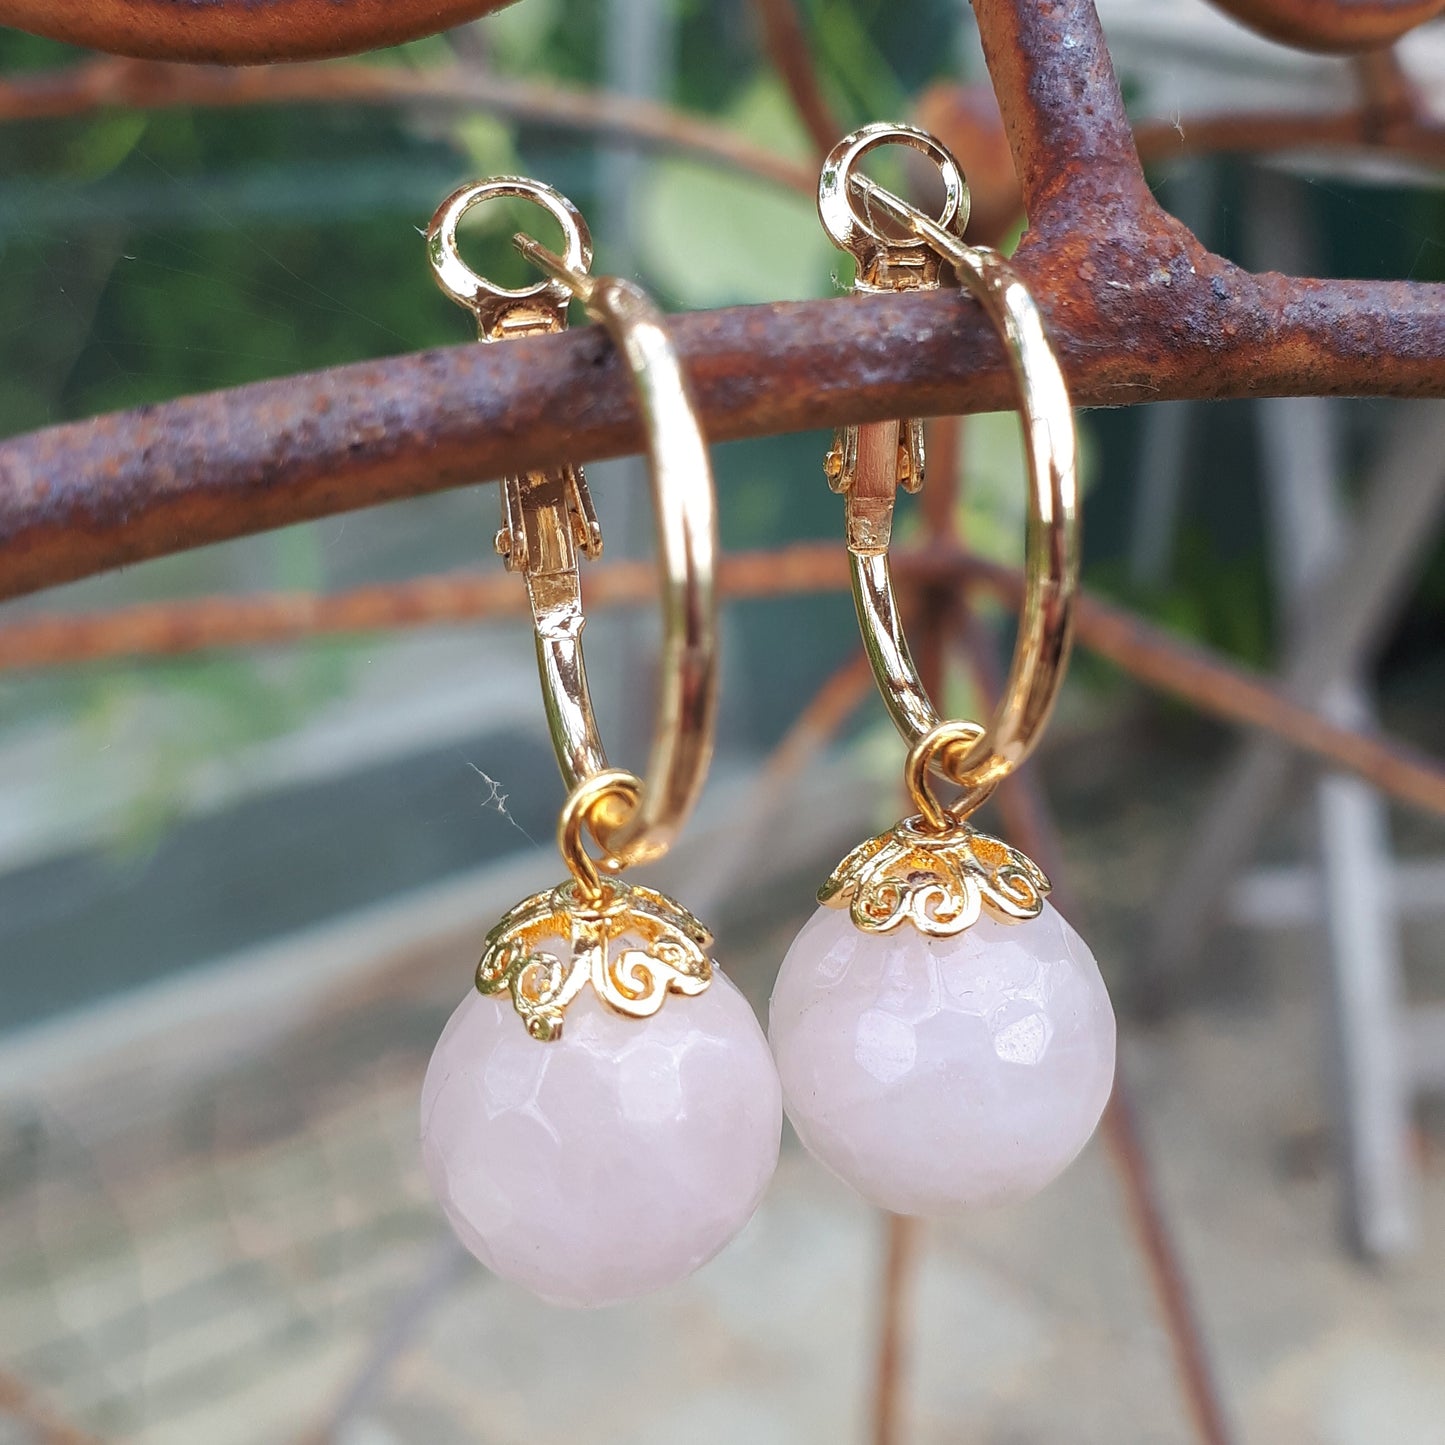 Pia unika hoops 1,8 cm. forgyldte med 18k guld og rosa quartz perler.